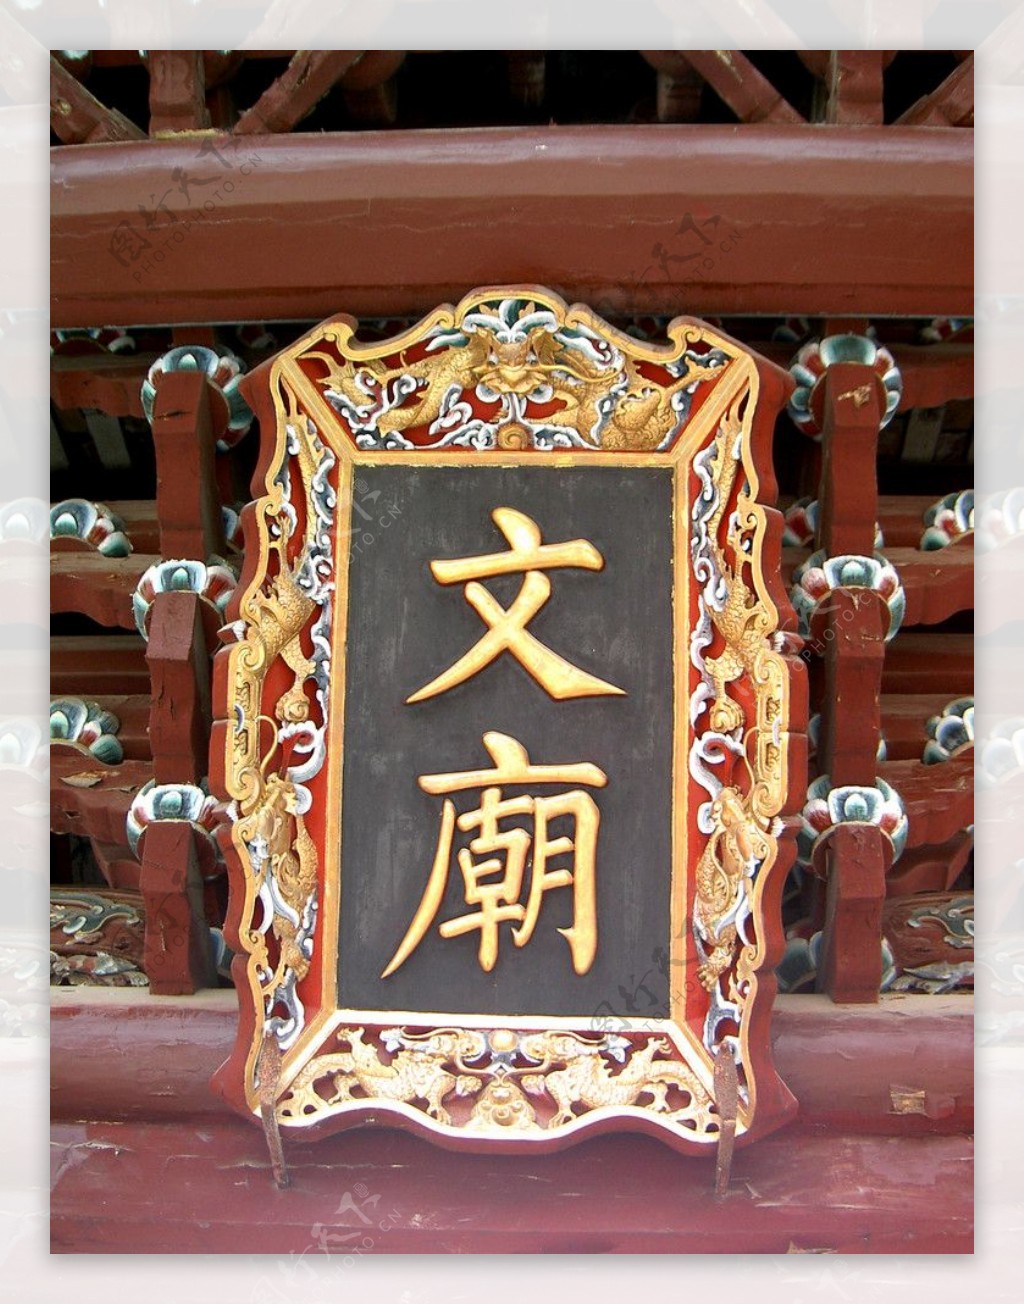 安溪文庙牌匾图片